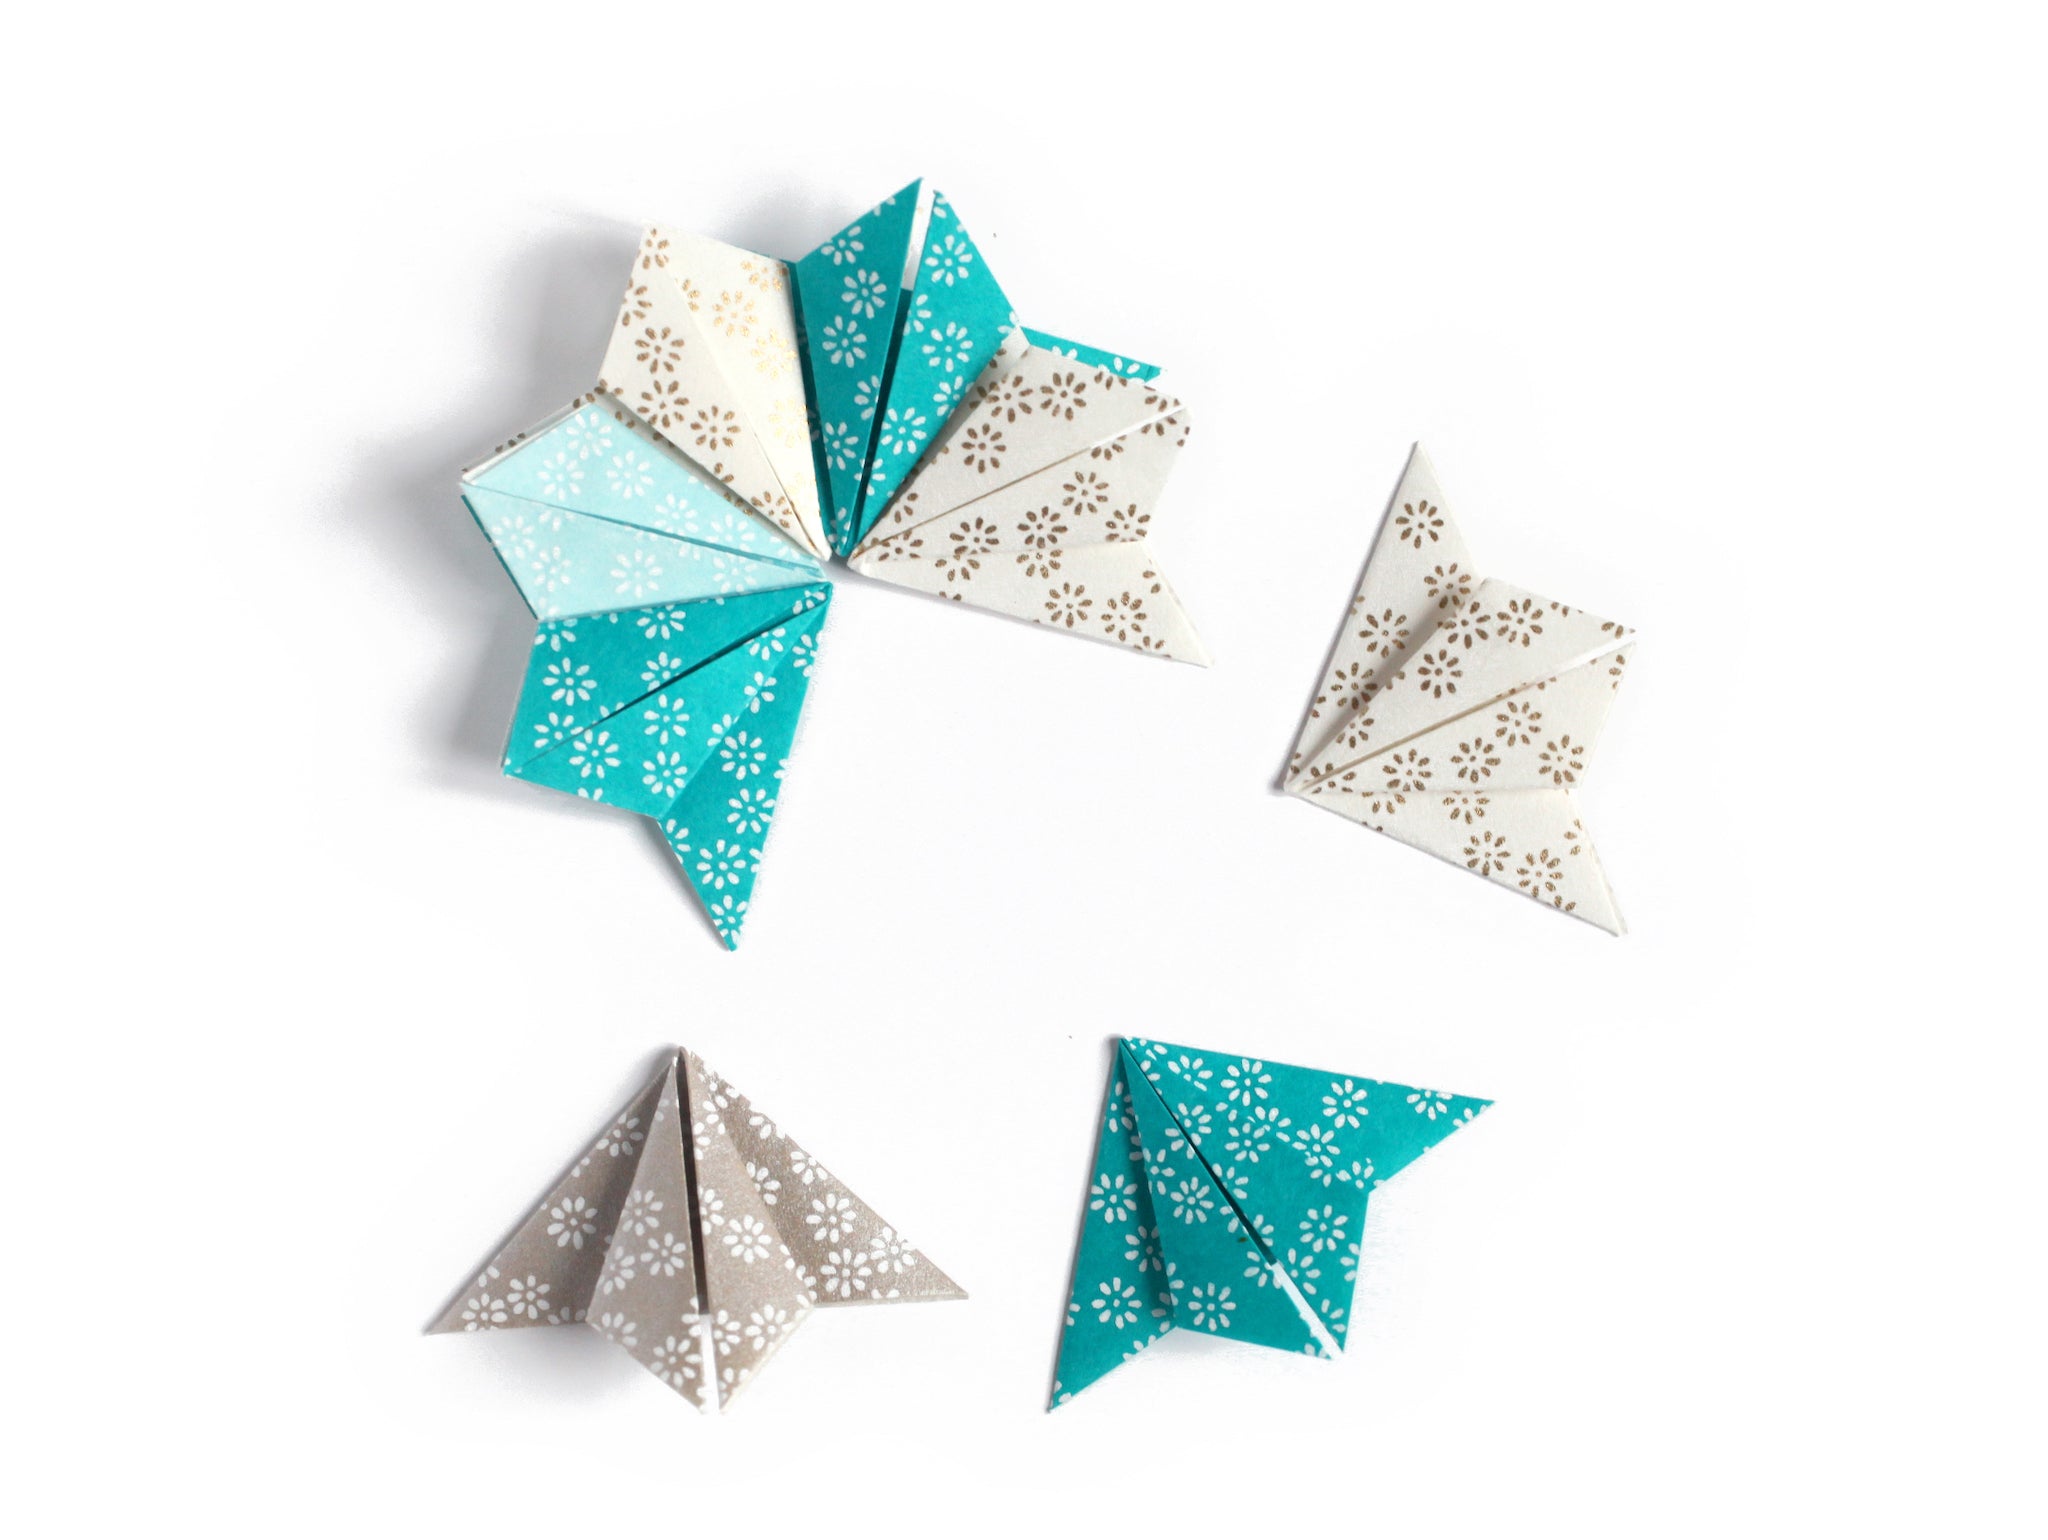 TUTO L'étoile plate à 5 branches en origami – Adeline Klam